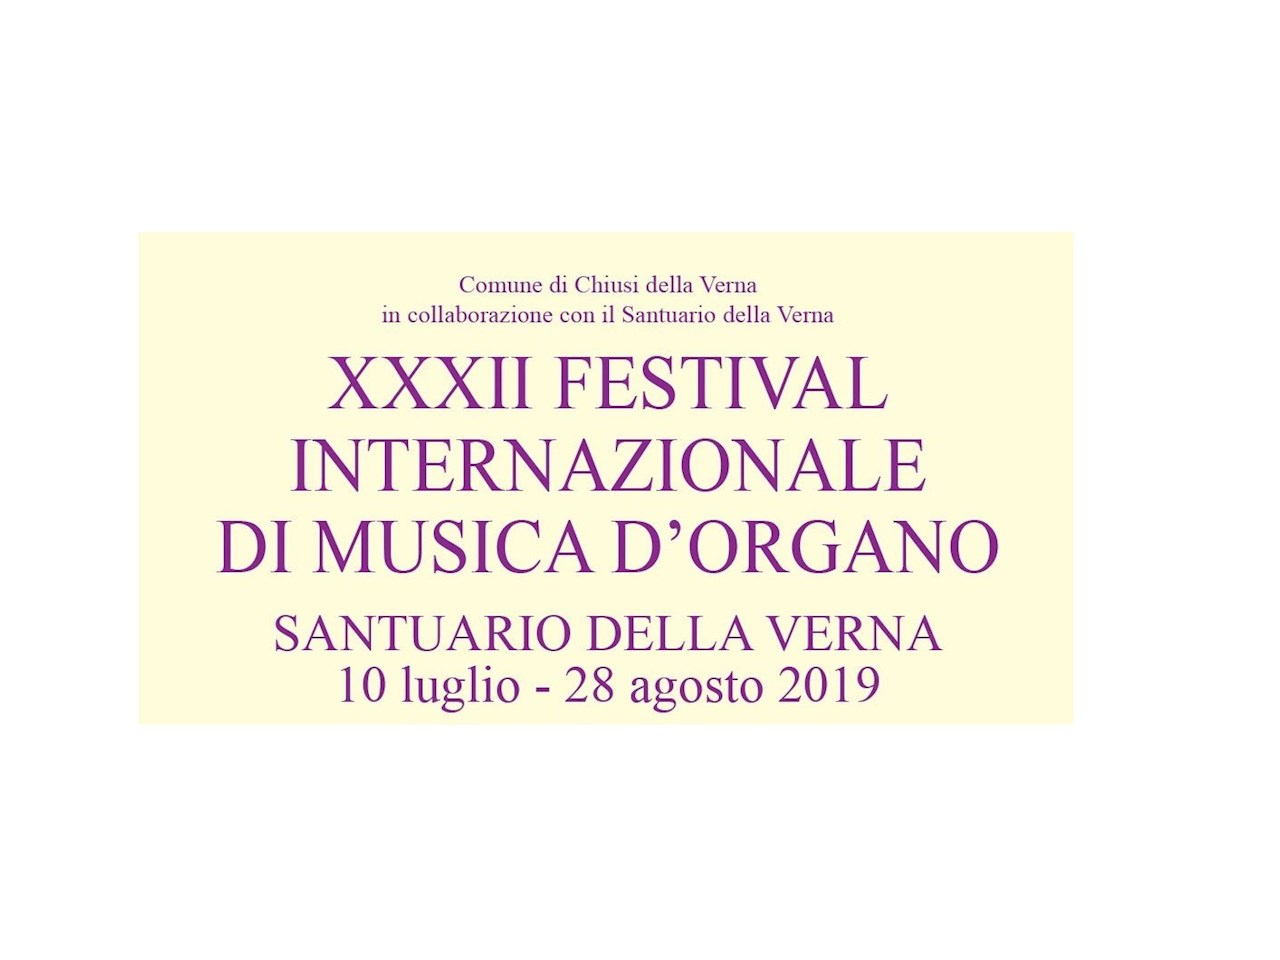 XXXII FESTIVAL INTERNAZIONALE DI MUSICA D’ORGANO